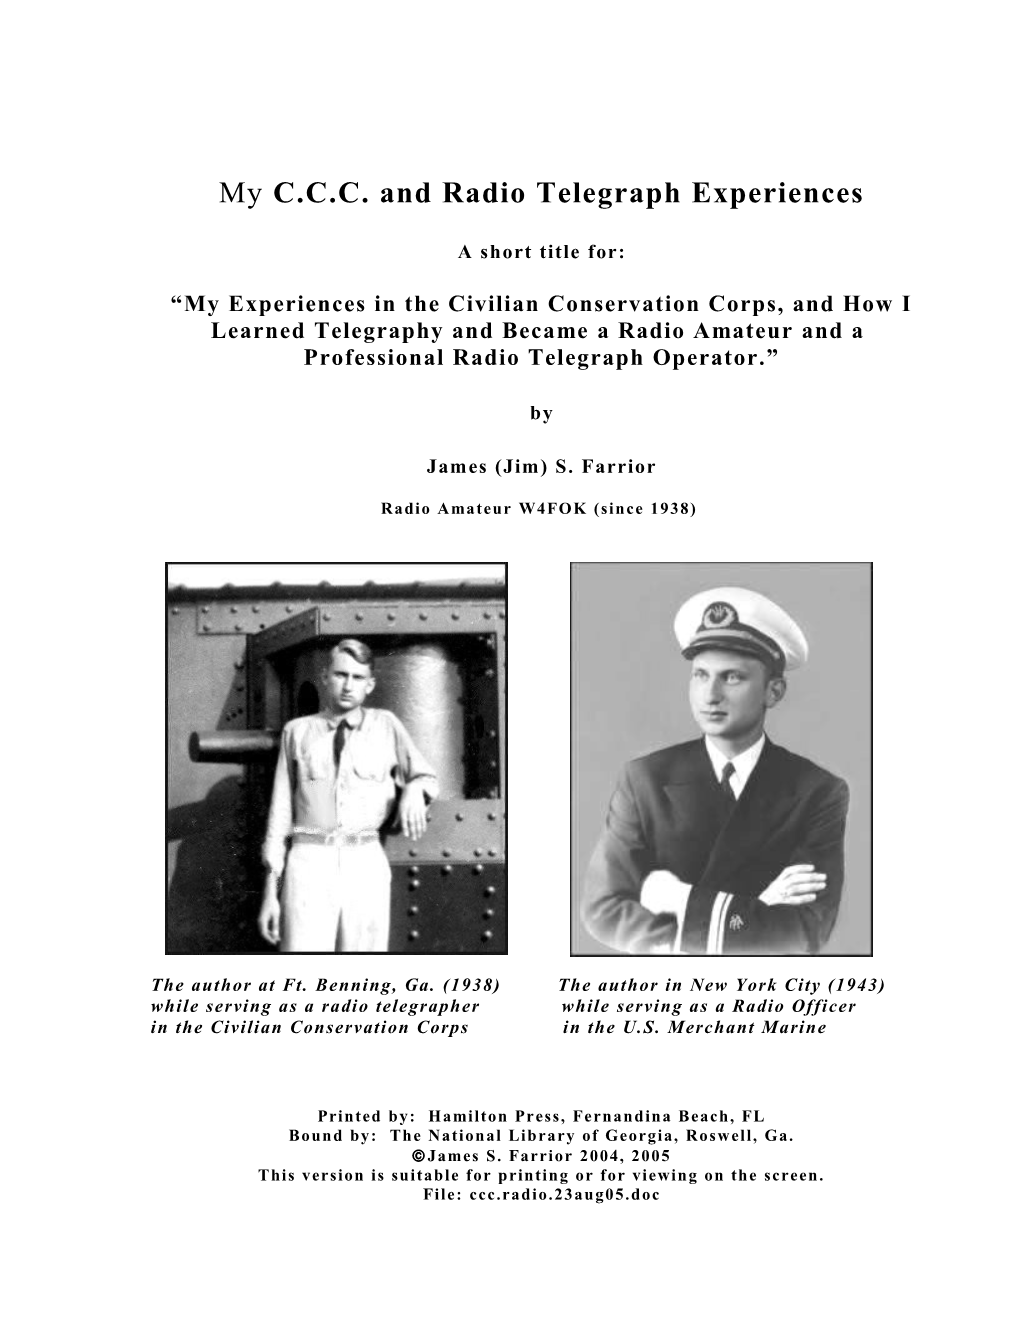 C.C.C. and Radio Telegraph Experiences